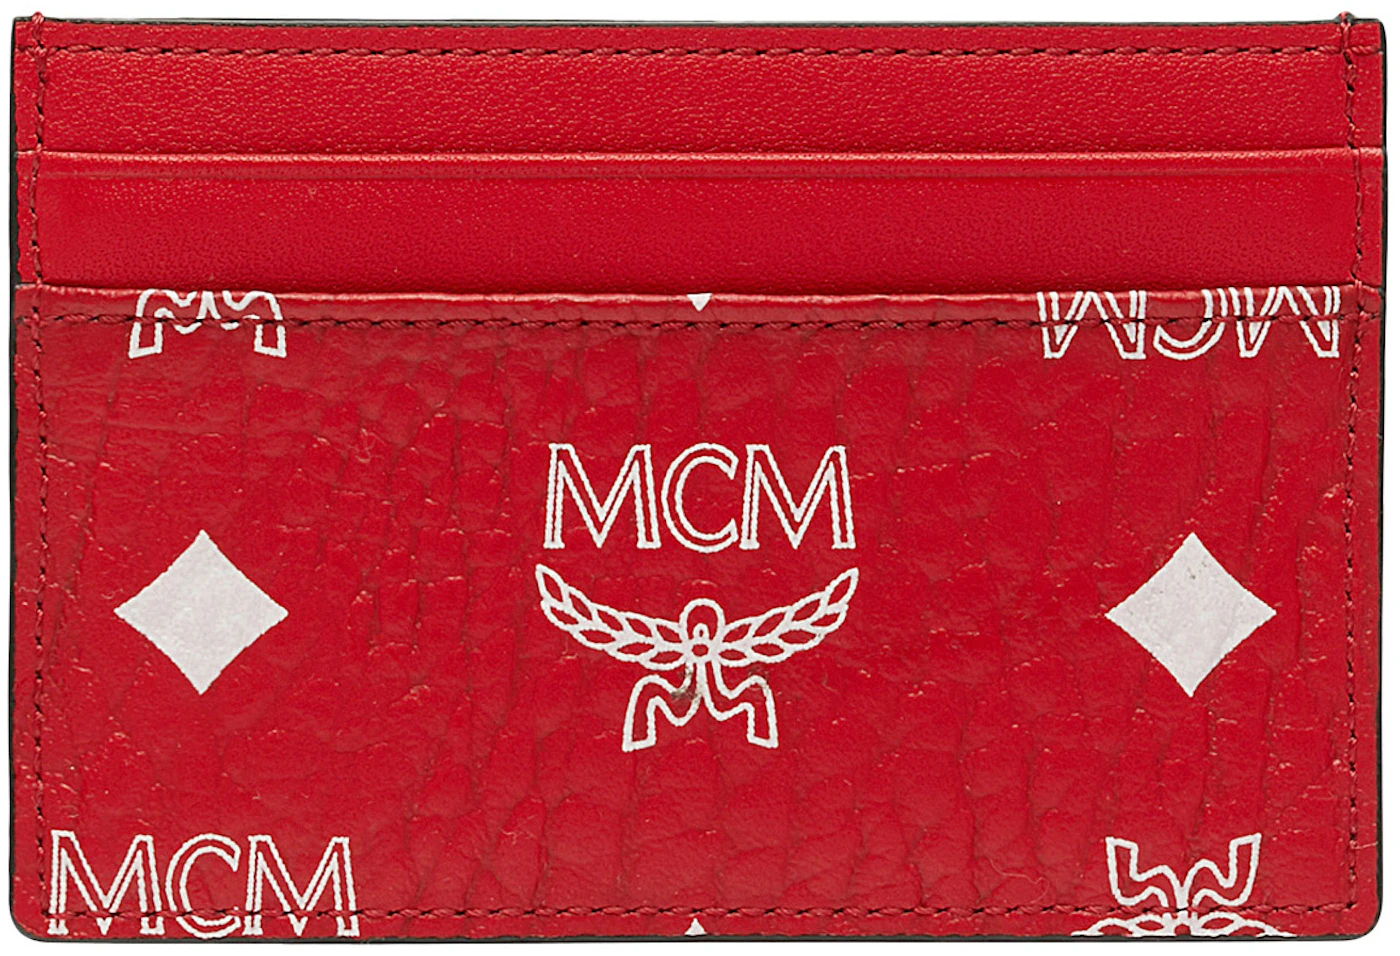 Mini Money Clip Card Case in Visetos Original Red